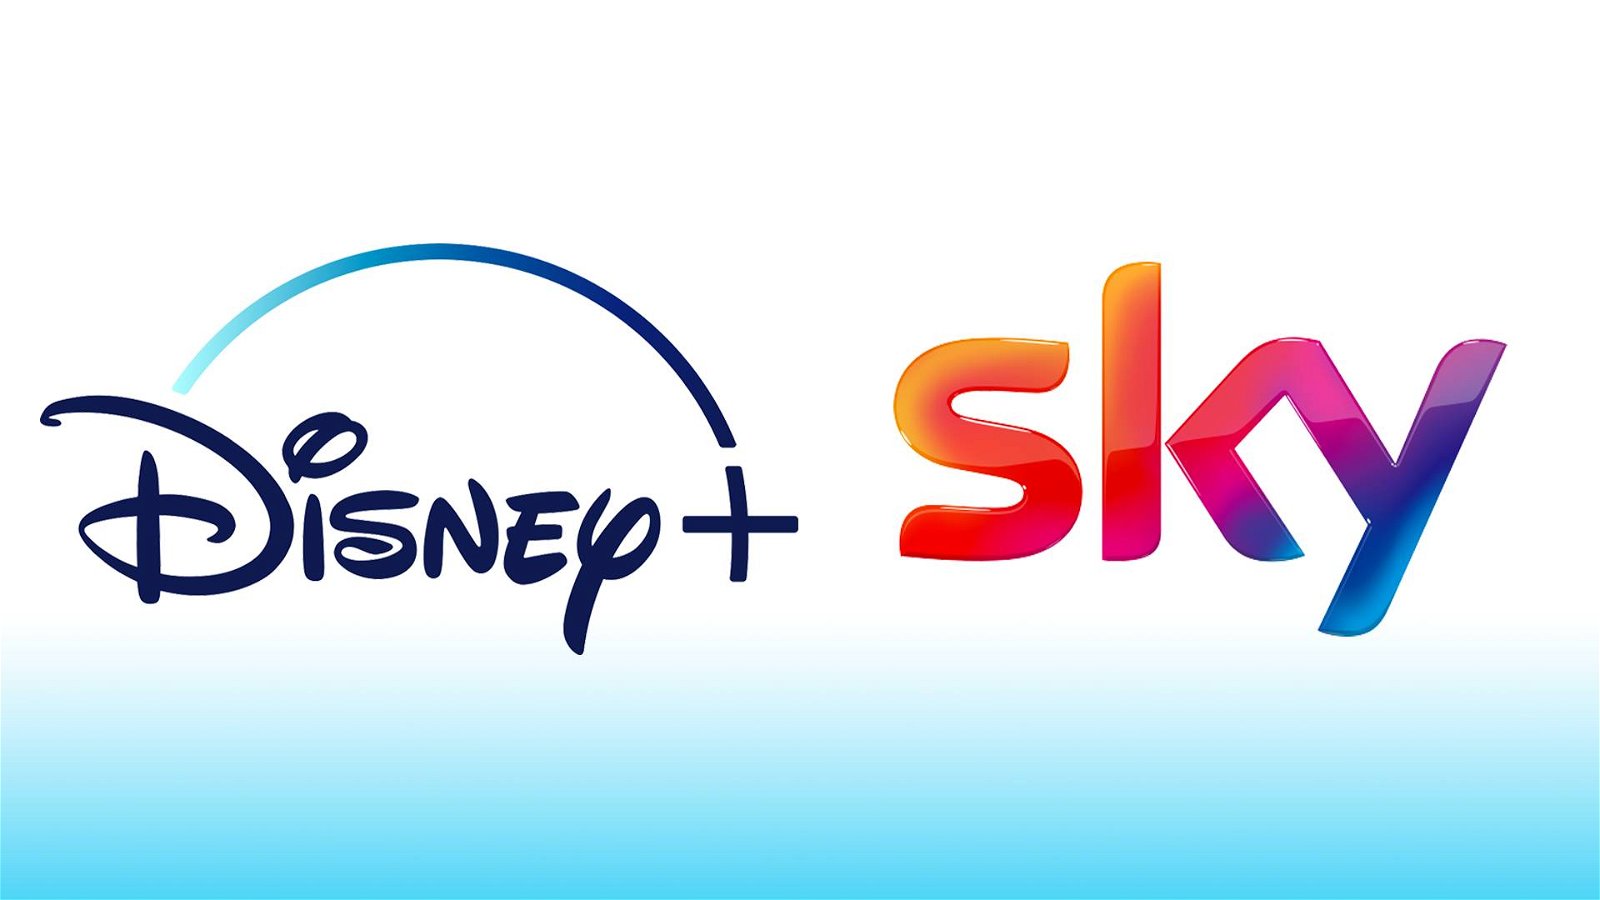 Immagine di Disney+ disponibile su SKY: annunciato un accordo pluriennale